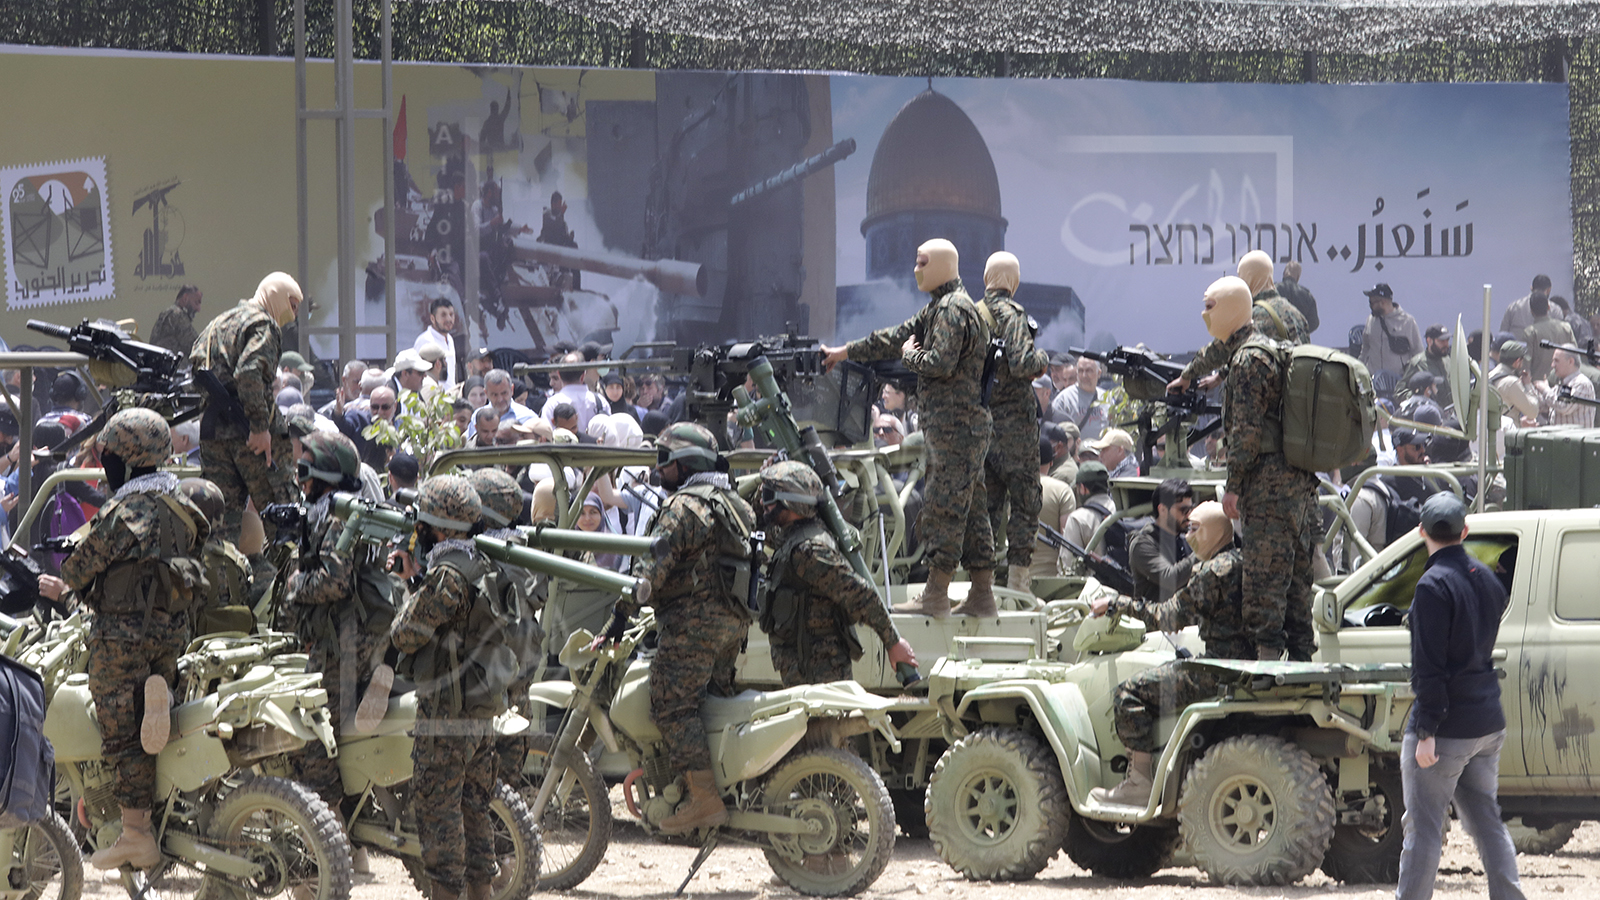 مناورة حزب الله العسكرية مشهودة إعلامياً: جاهزون للحرب